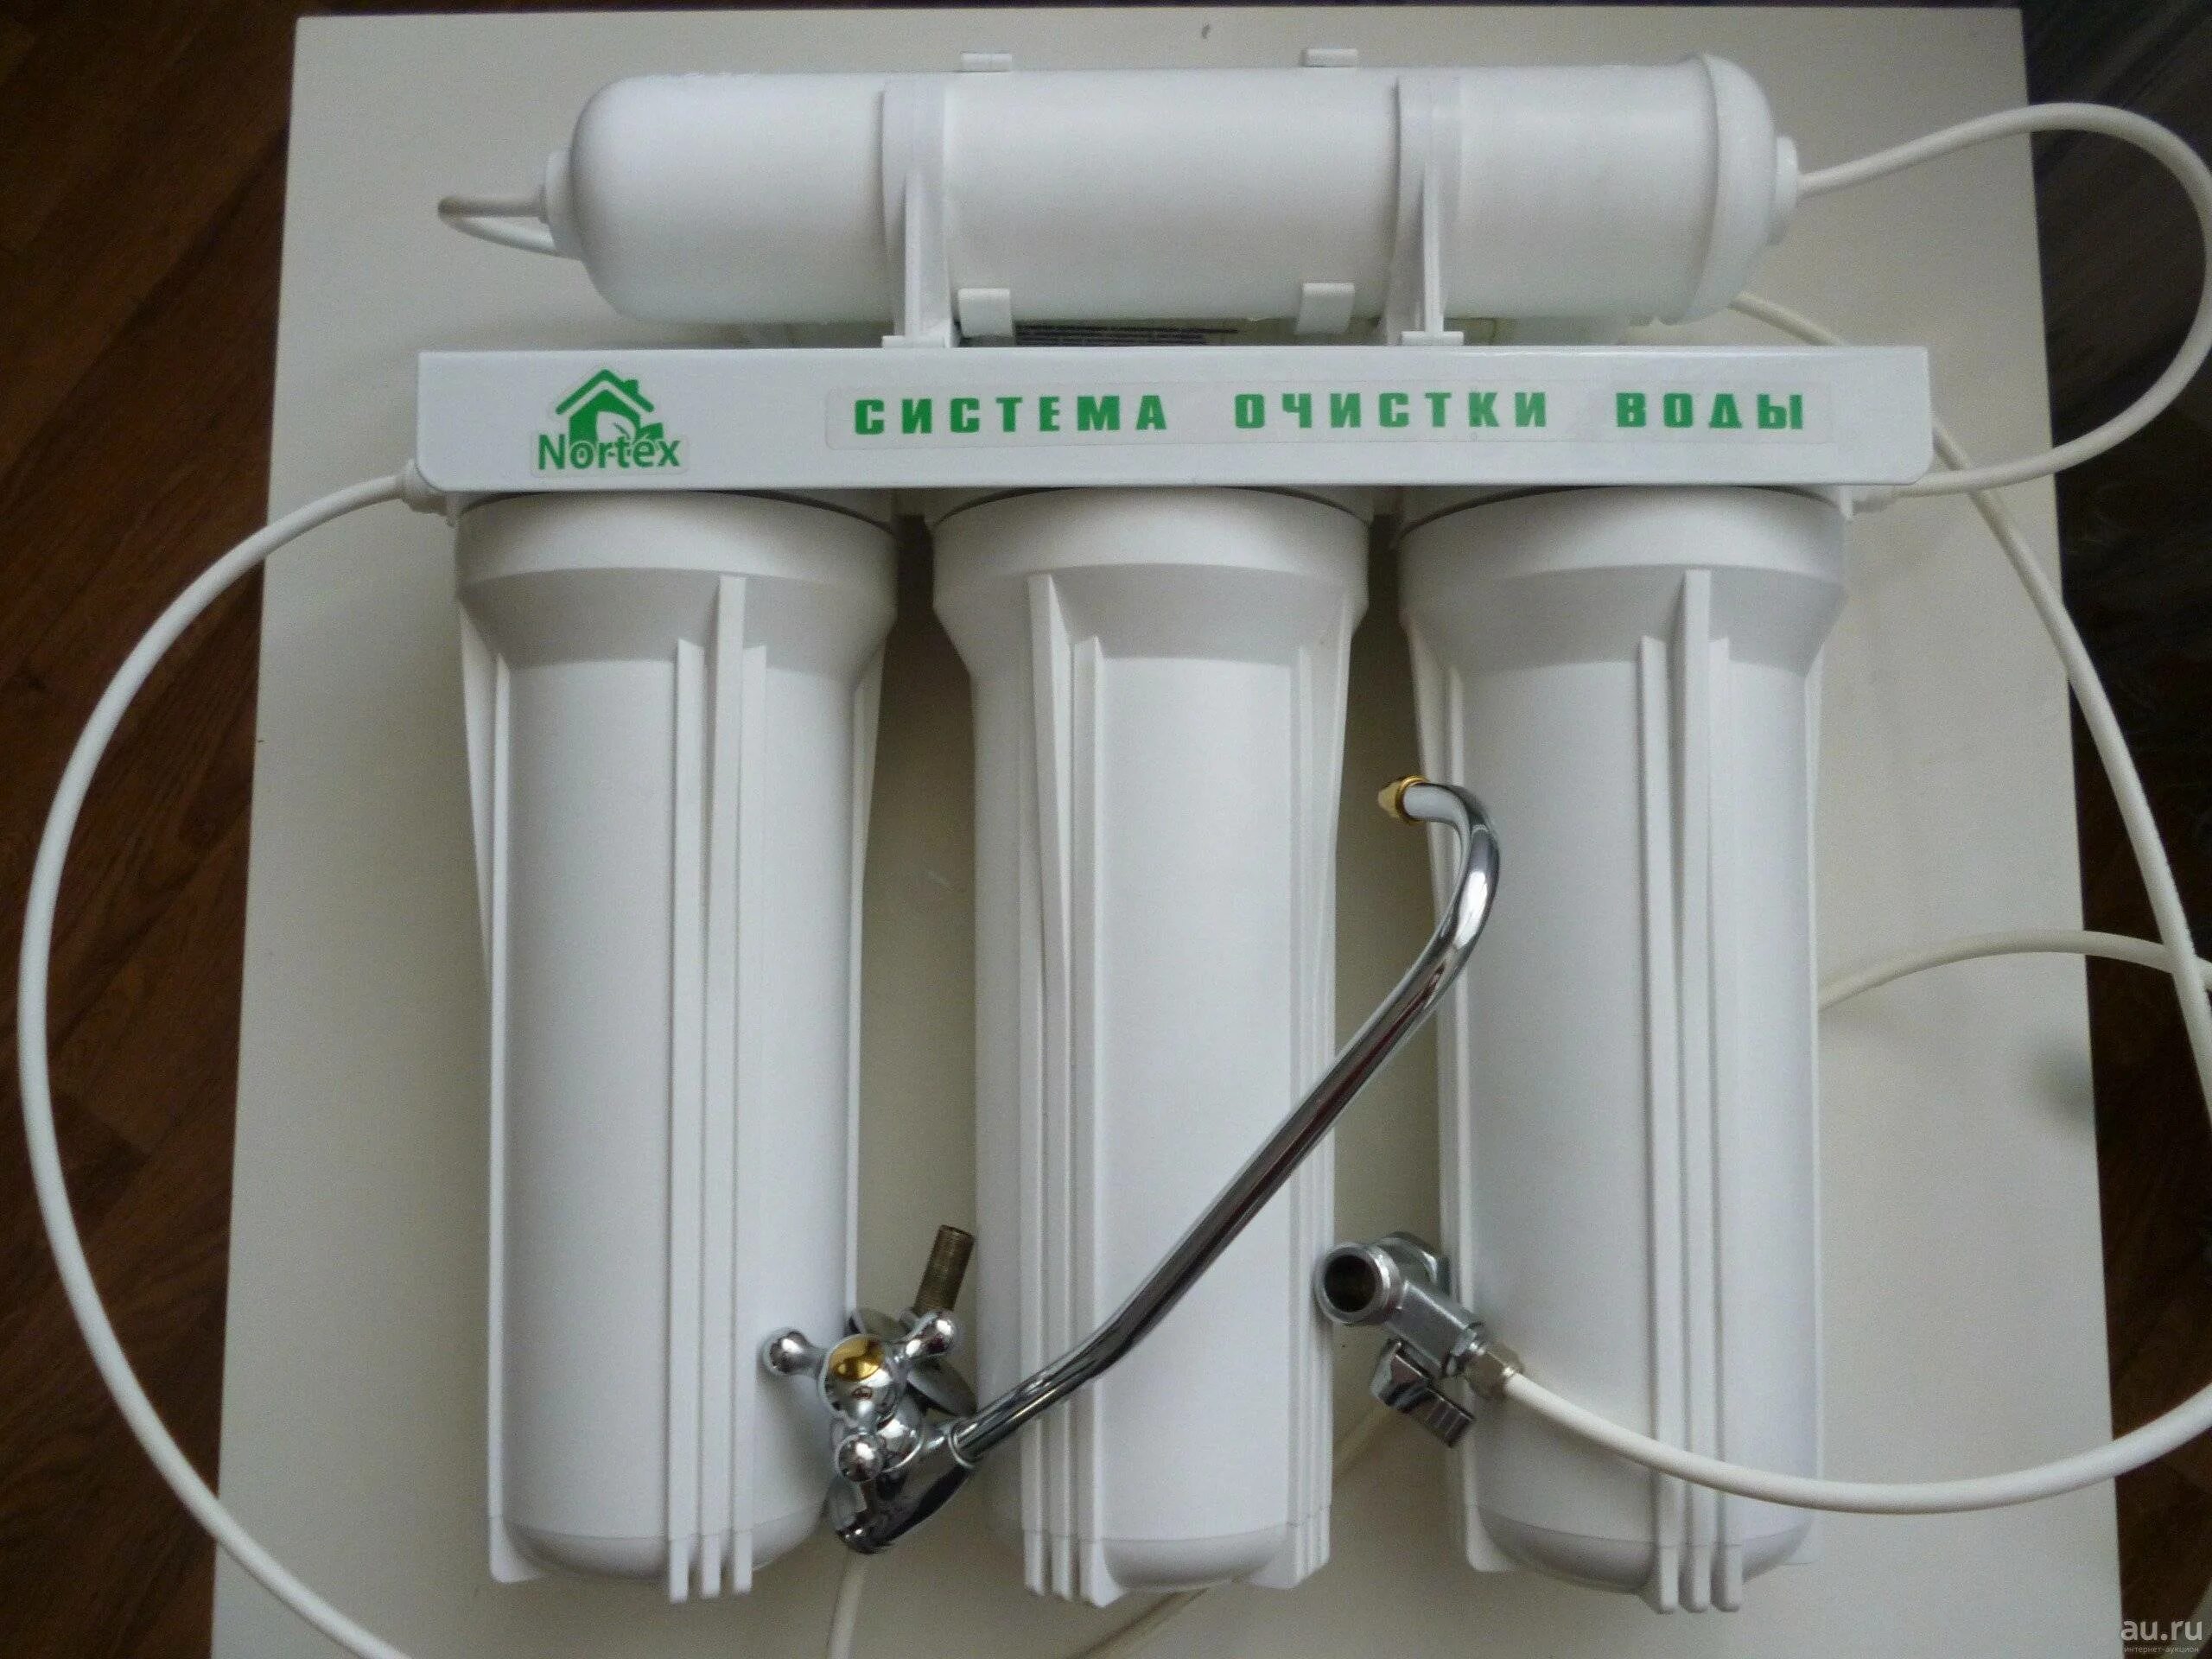 Фильтры для очистки воды ступеней. Фильтр для воды Нортекс стандарт. Картридж Aqua-5 Nortex. Комплект фильтрующих элементов Нортекс стандарт 12. Фильтр Nortex ( Нортекс ) Осмо-7.